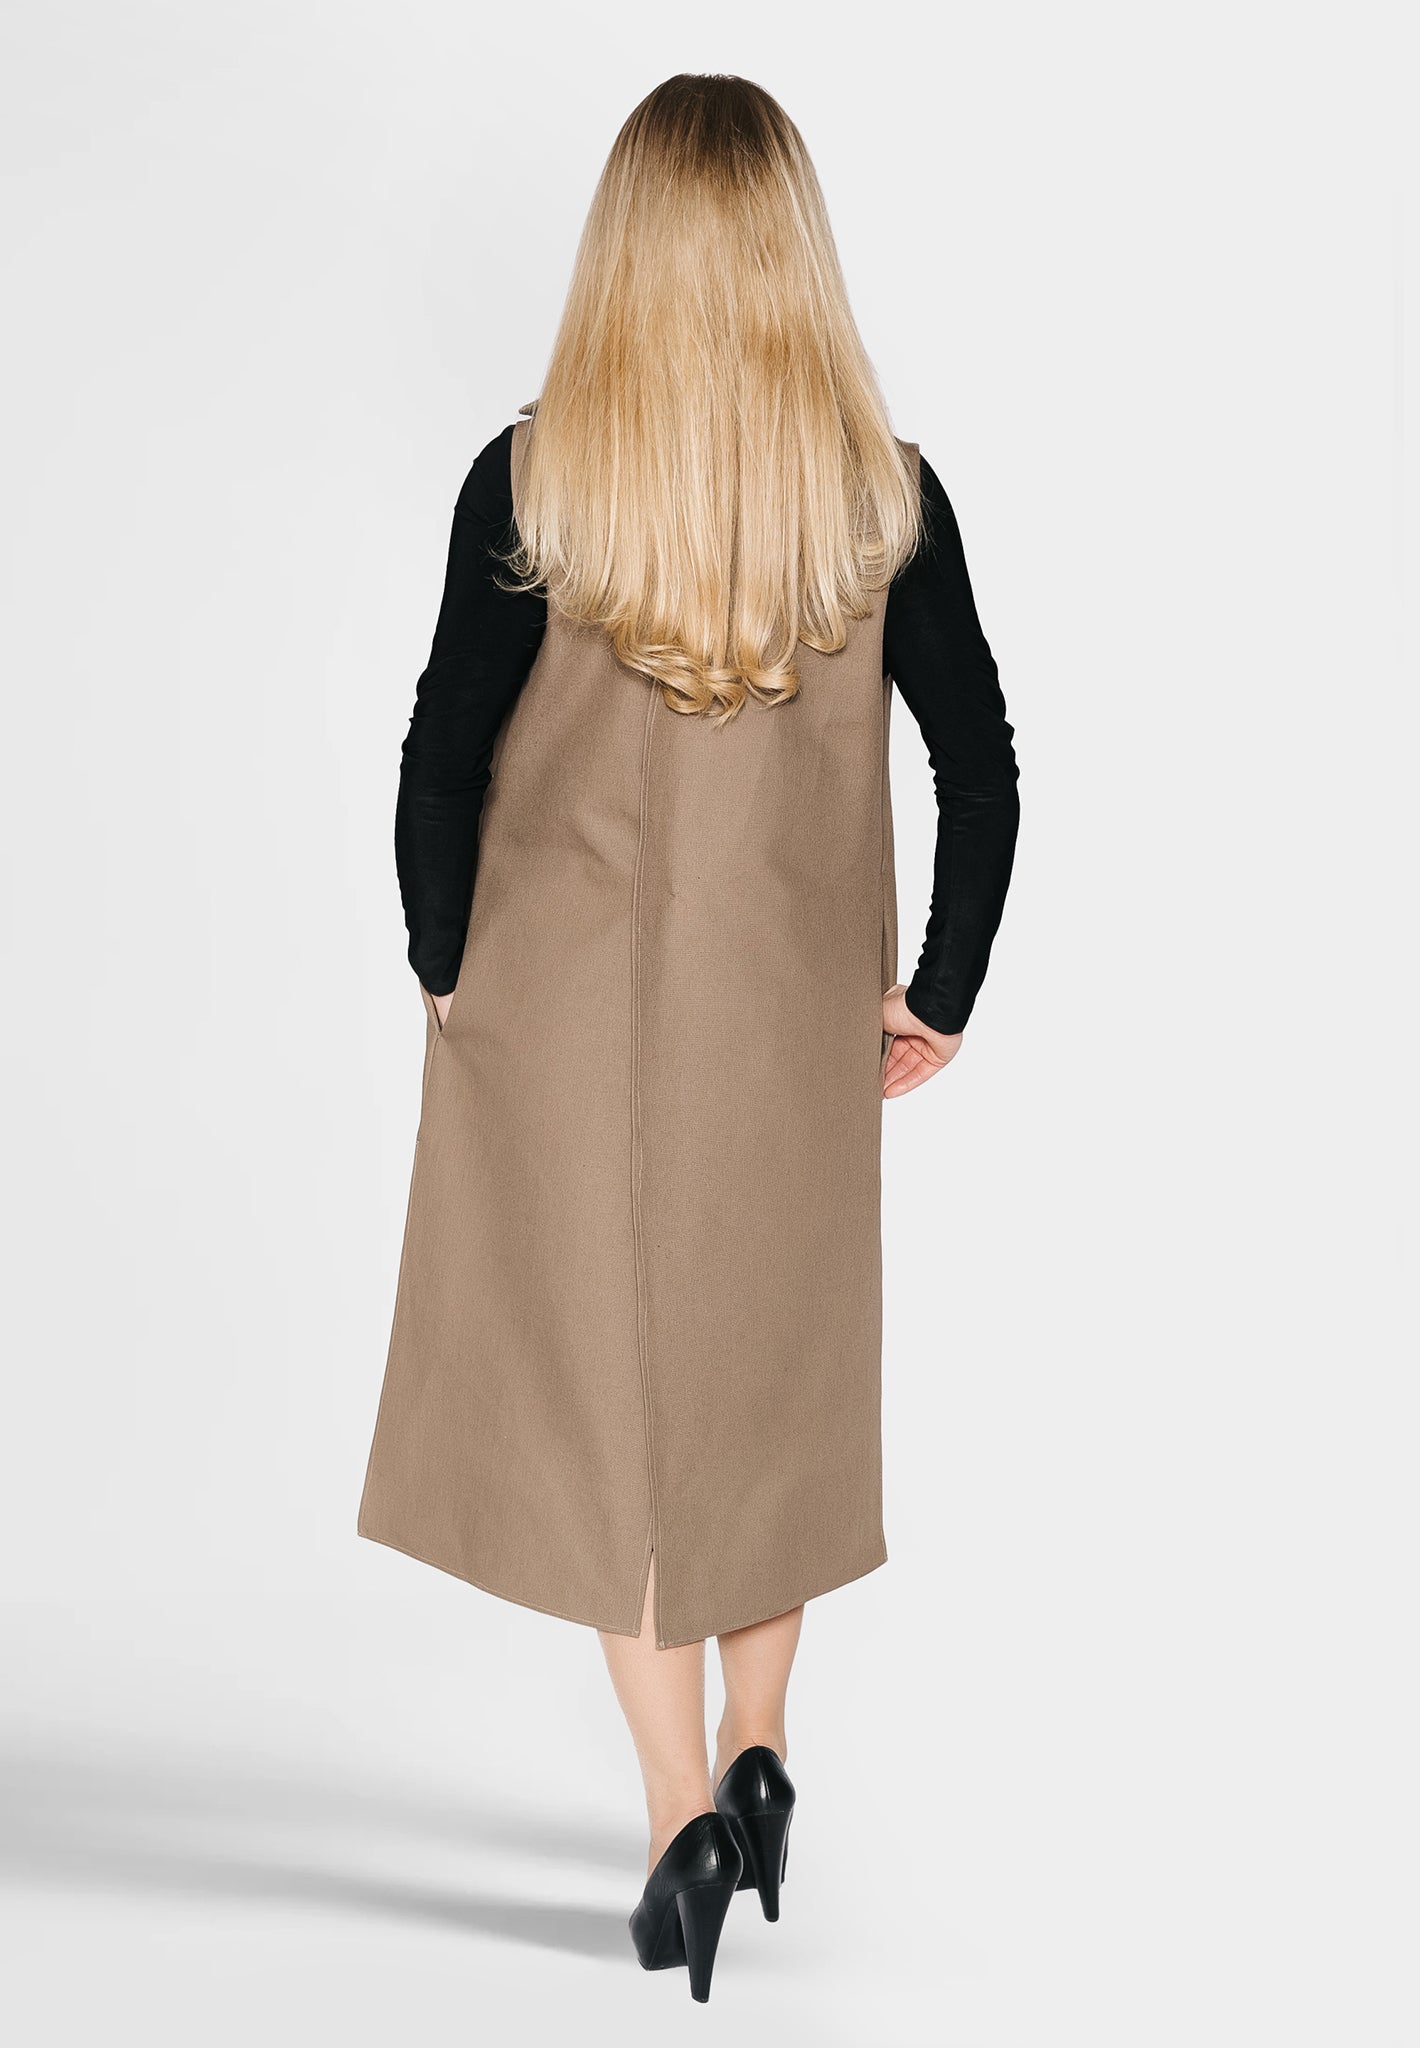 Cecilia coat dress